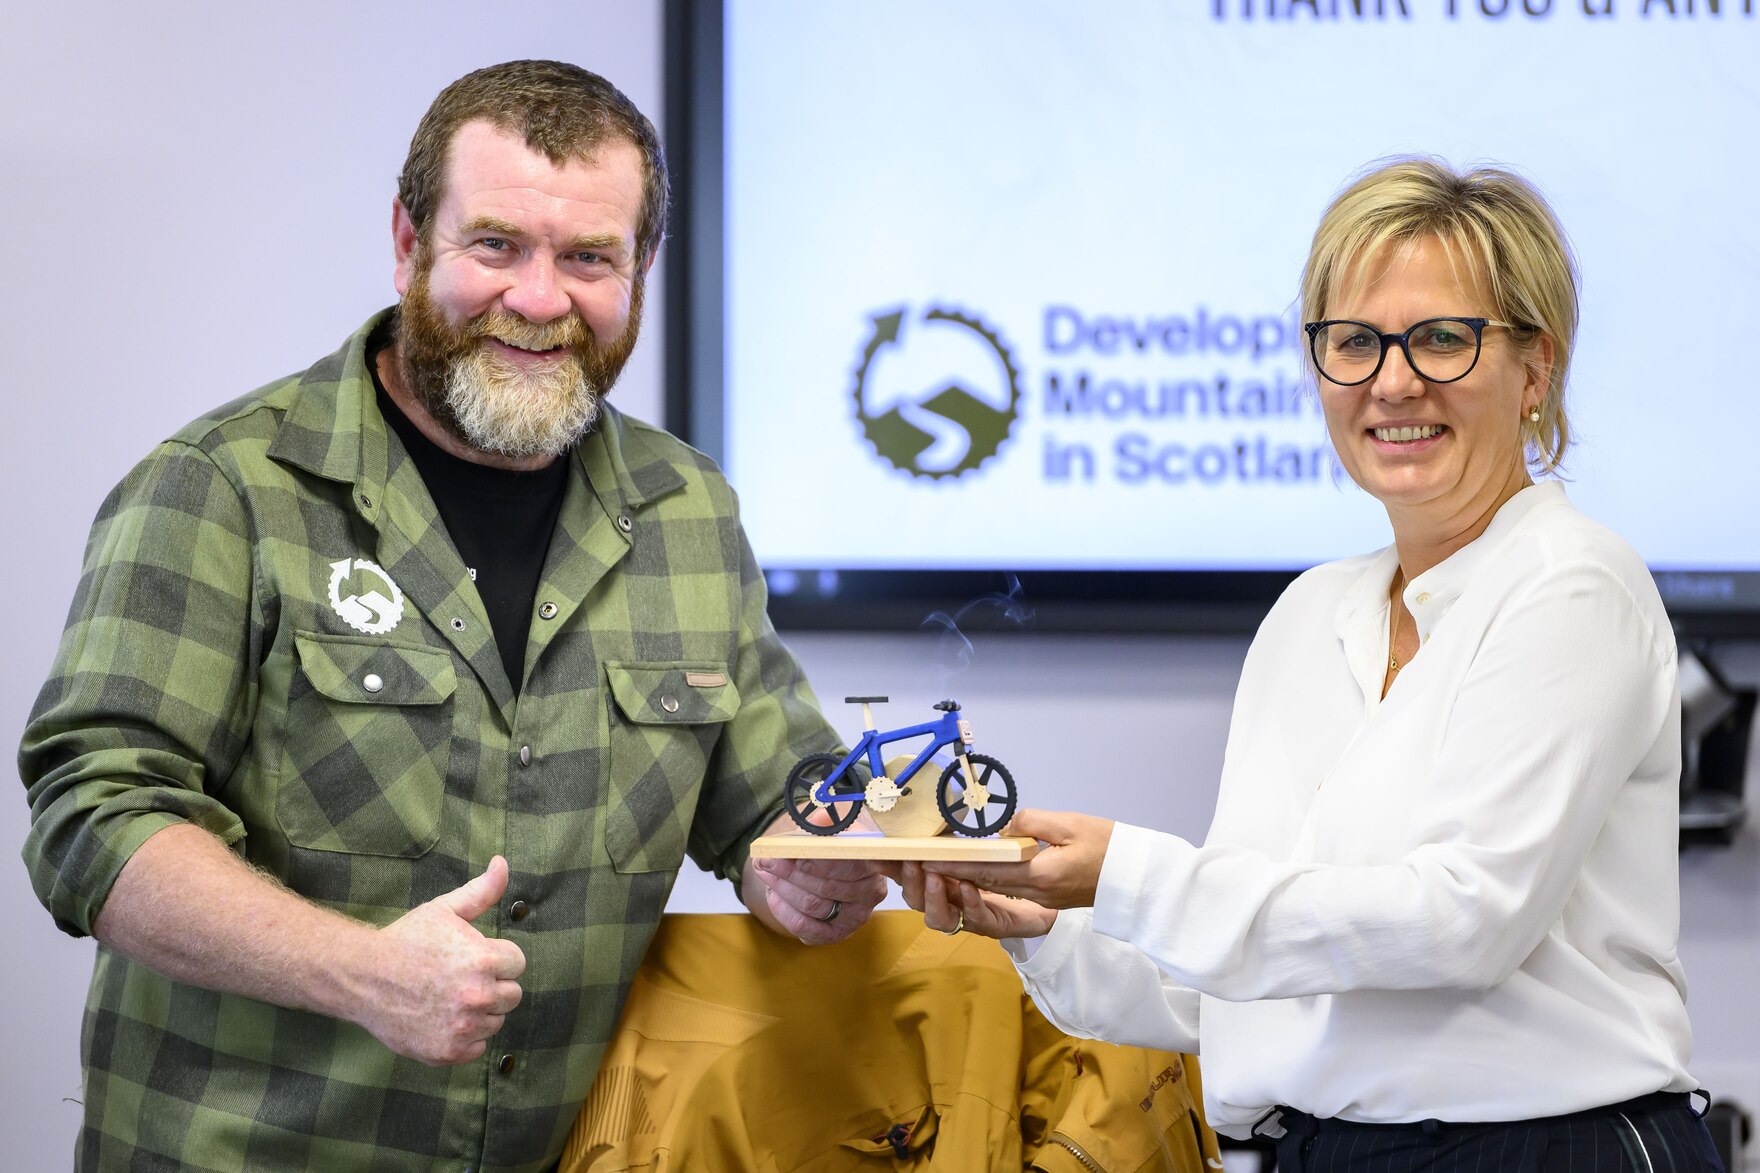 Die Ministerin übergibt dem schottischen Mountainbike-Experten ein Gastgeschenk: Ein Räuchermännchen in Mountainbike-Form